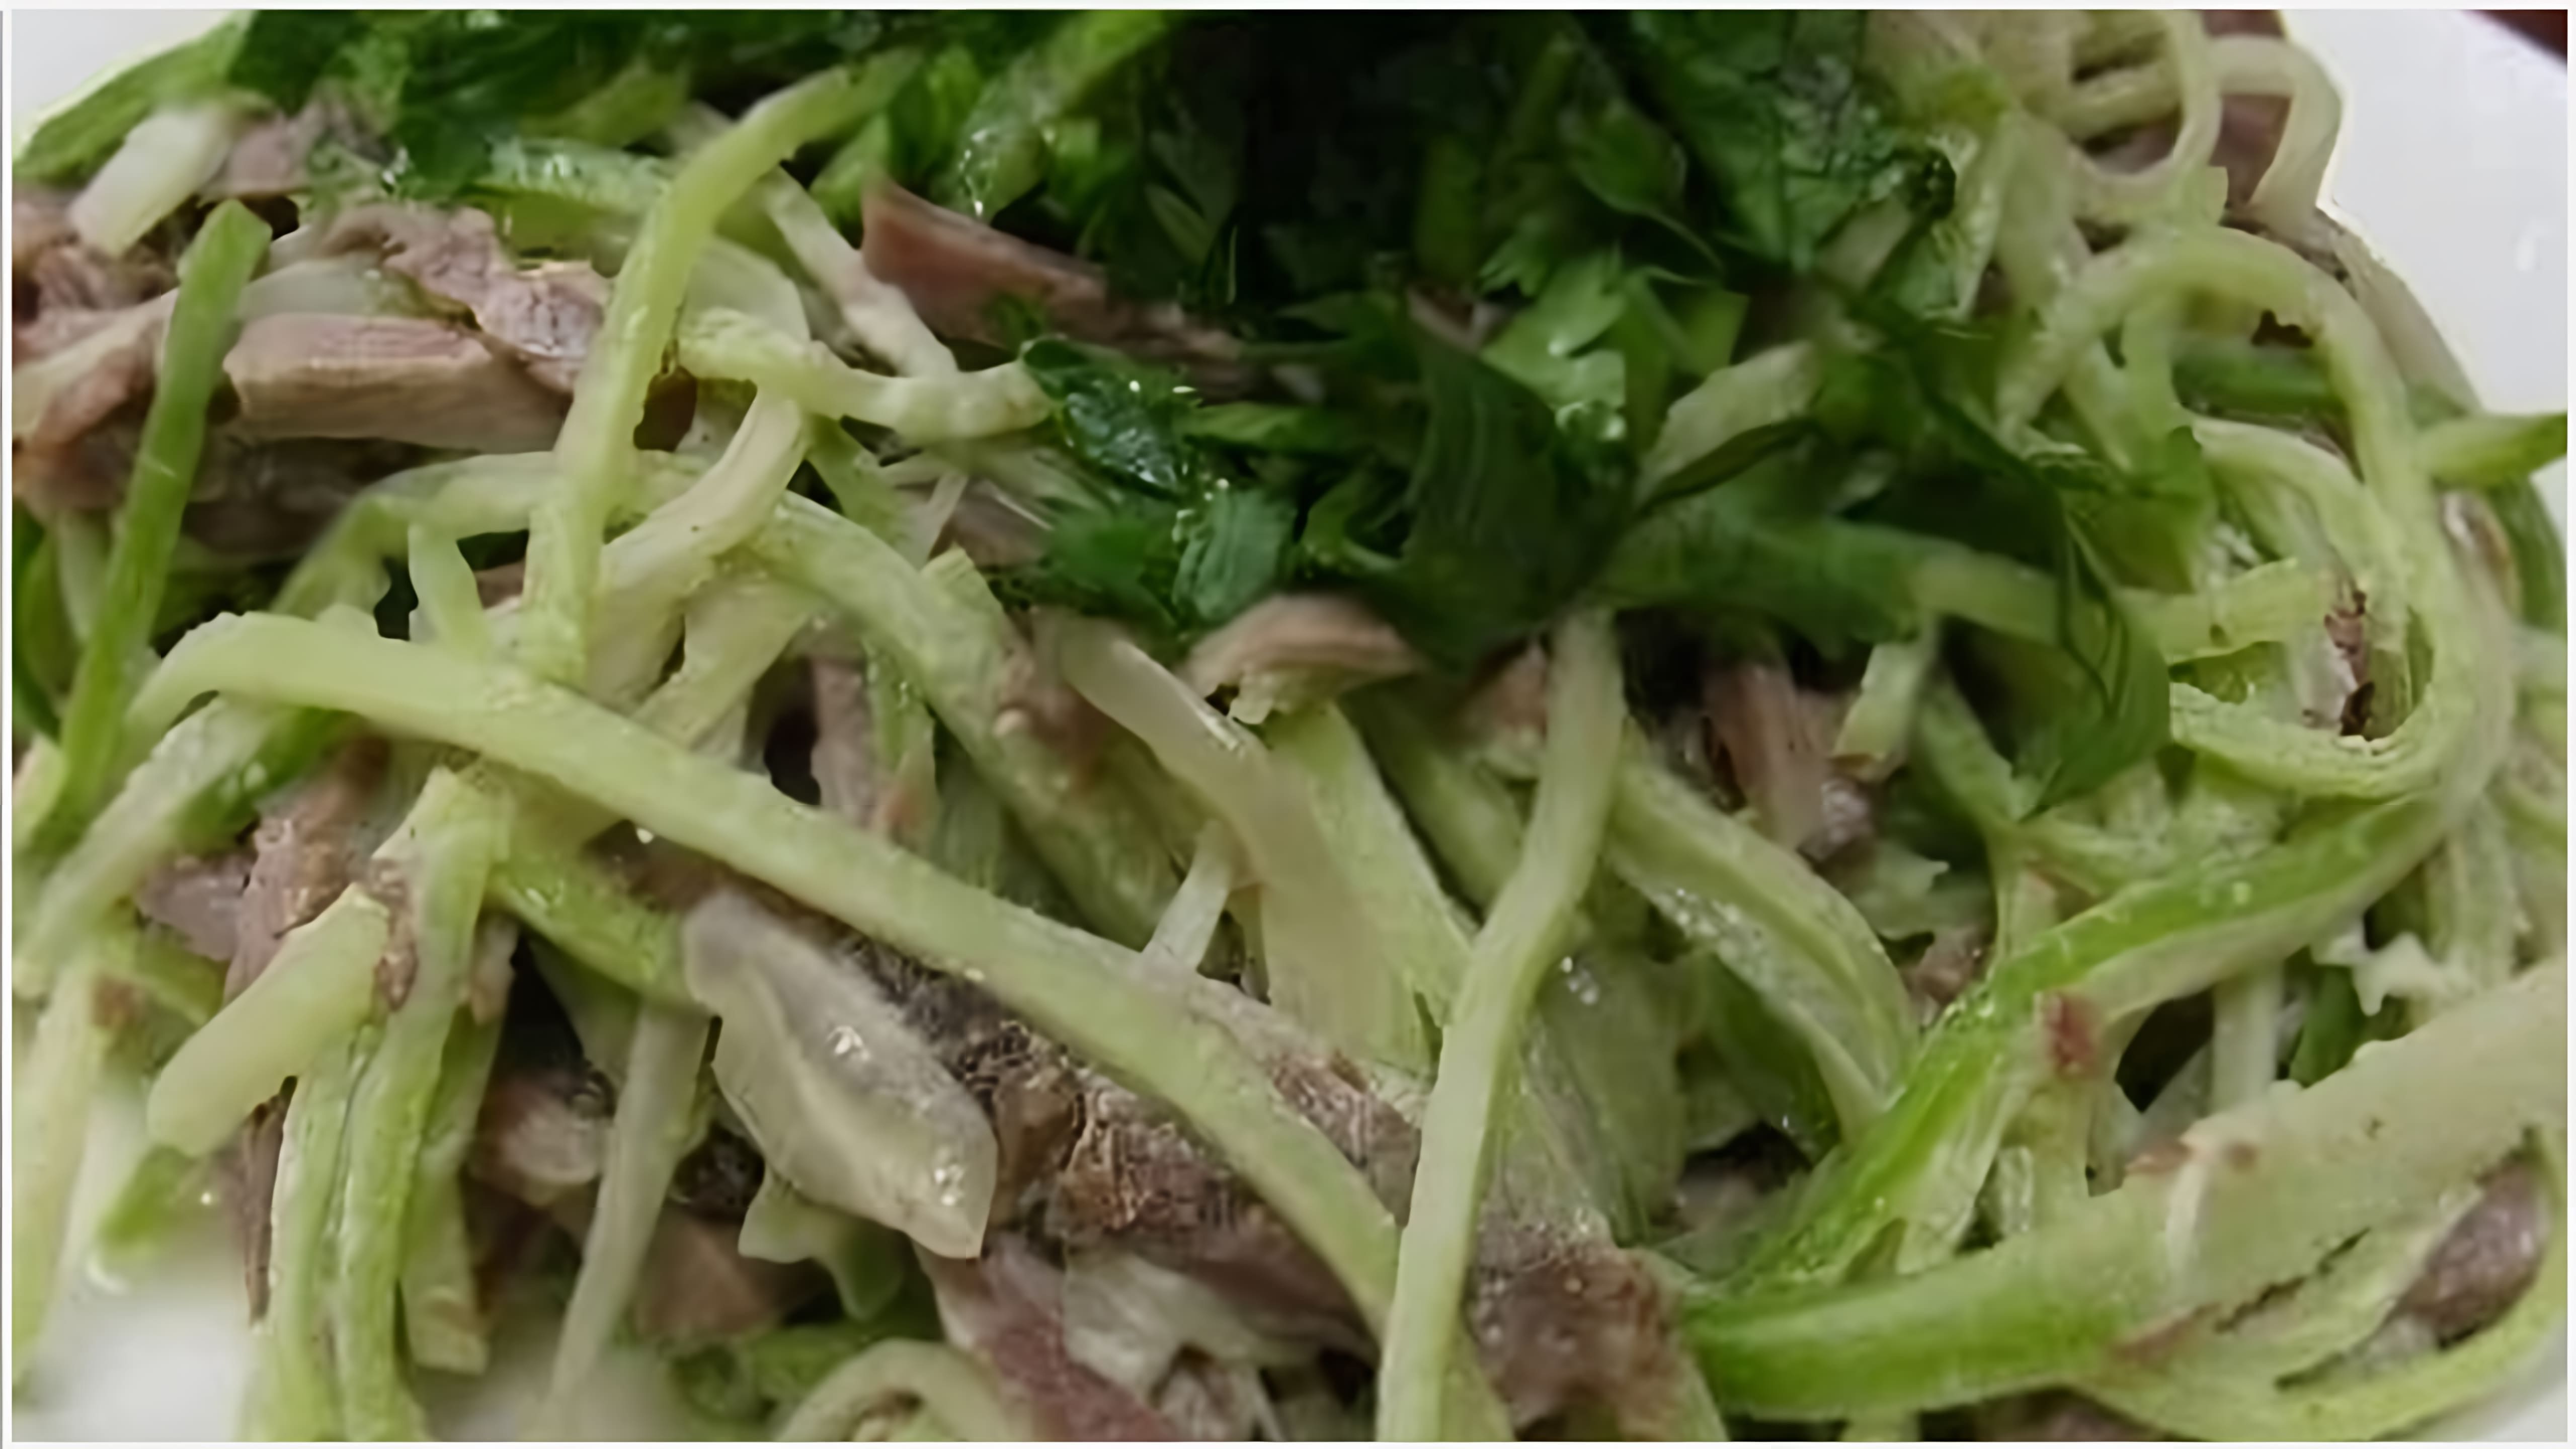 Очень вкусный салат из зелёной редьки с мясом - это видео-ролик, который демонстрирует процесс приготовления вкусного и полезного салата из зелёной редьки с мясом